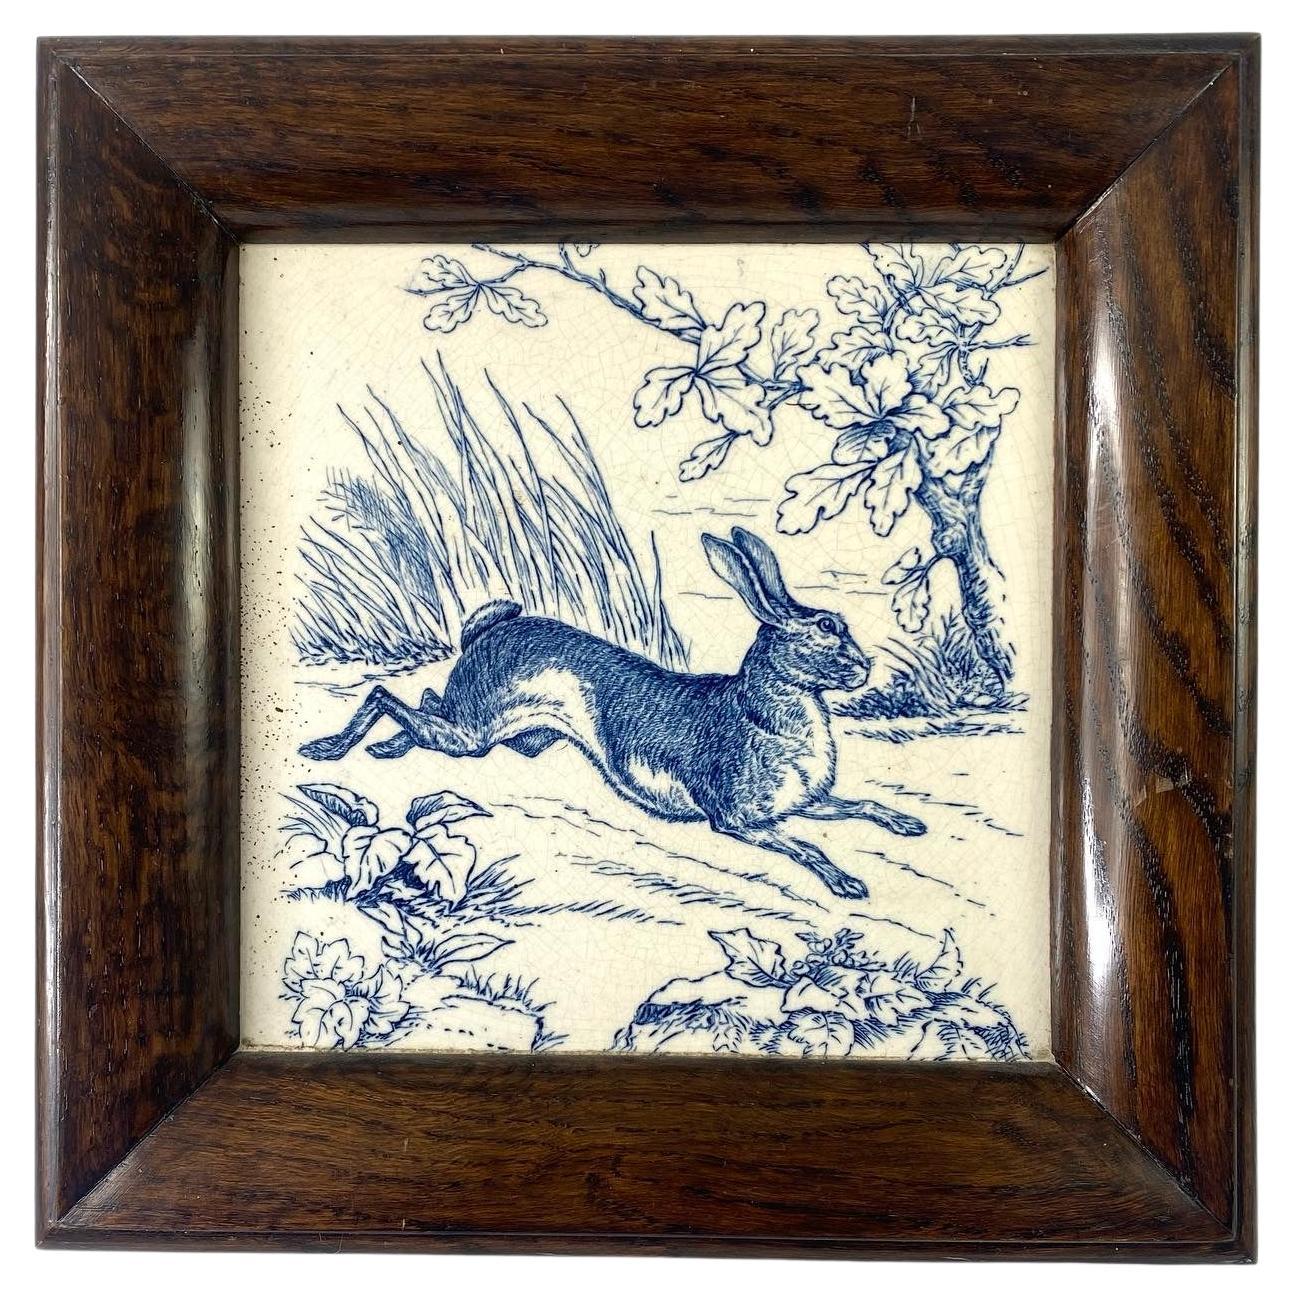 Wedgwood Pottery Tile. ‘Hare’, Framed, C. 1875